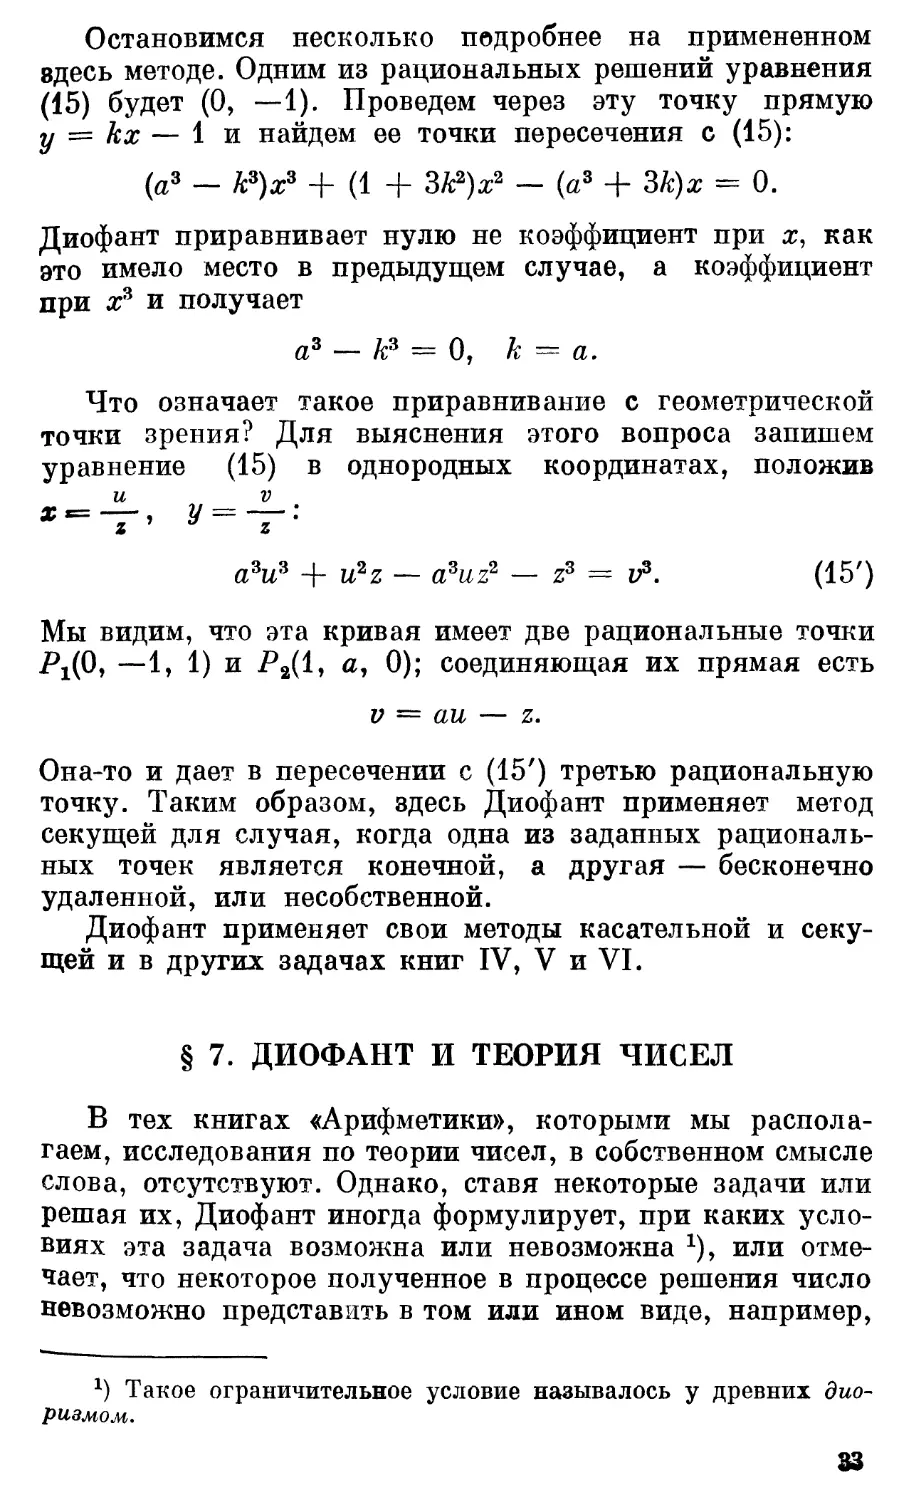 § 7. Диофант и теория чисел